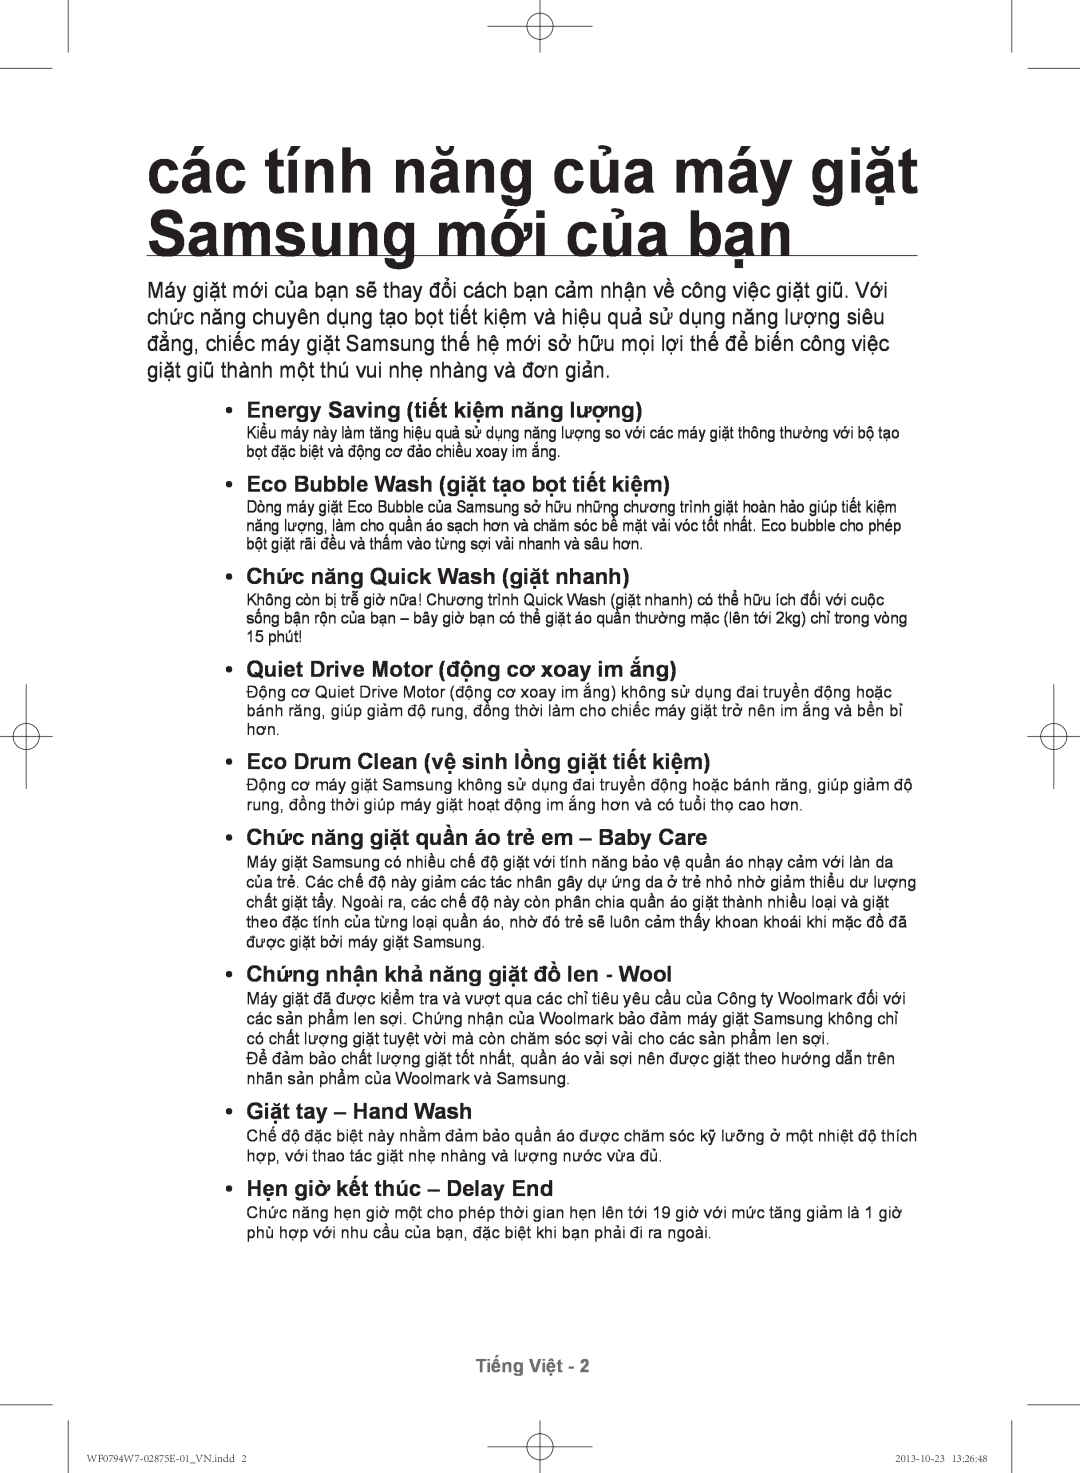 Samsung WF0794W7E9/XSV các tính năng của máy giặt Samsung mới của bạn, Energy Saving tiêt kiêm năng lượng, Tiếng Việt 